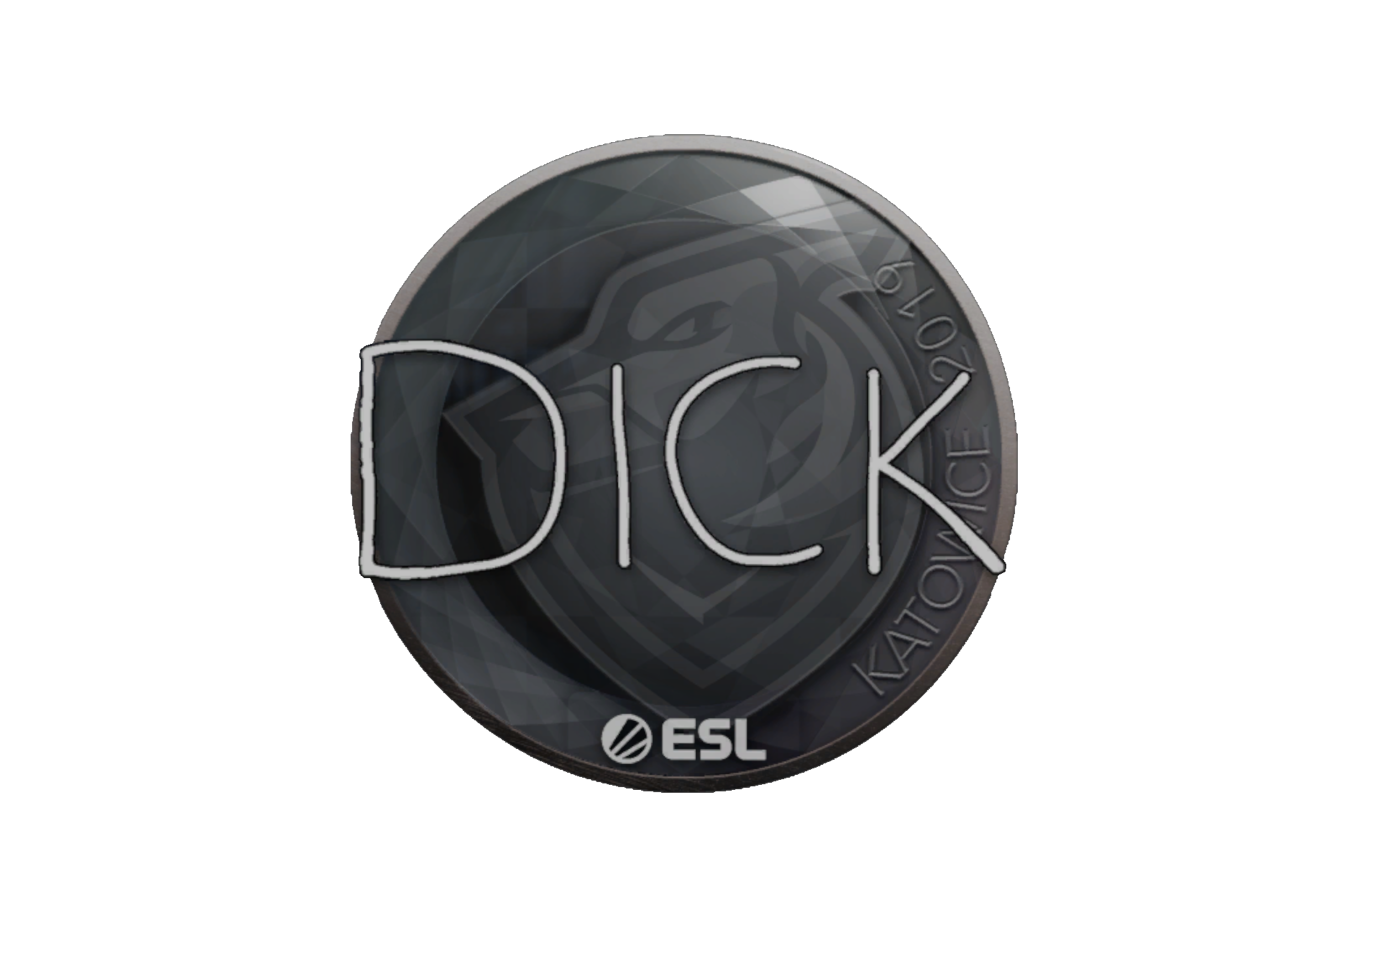 Dick купить. Наклейка dick CS go. Наклейка | Dickstacy | Катовице 2019. Dickstacy наклейка. Big dick наклейка в КС го.